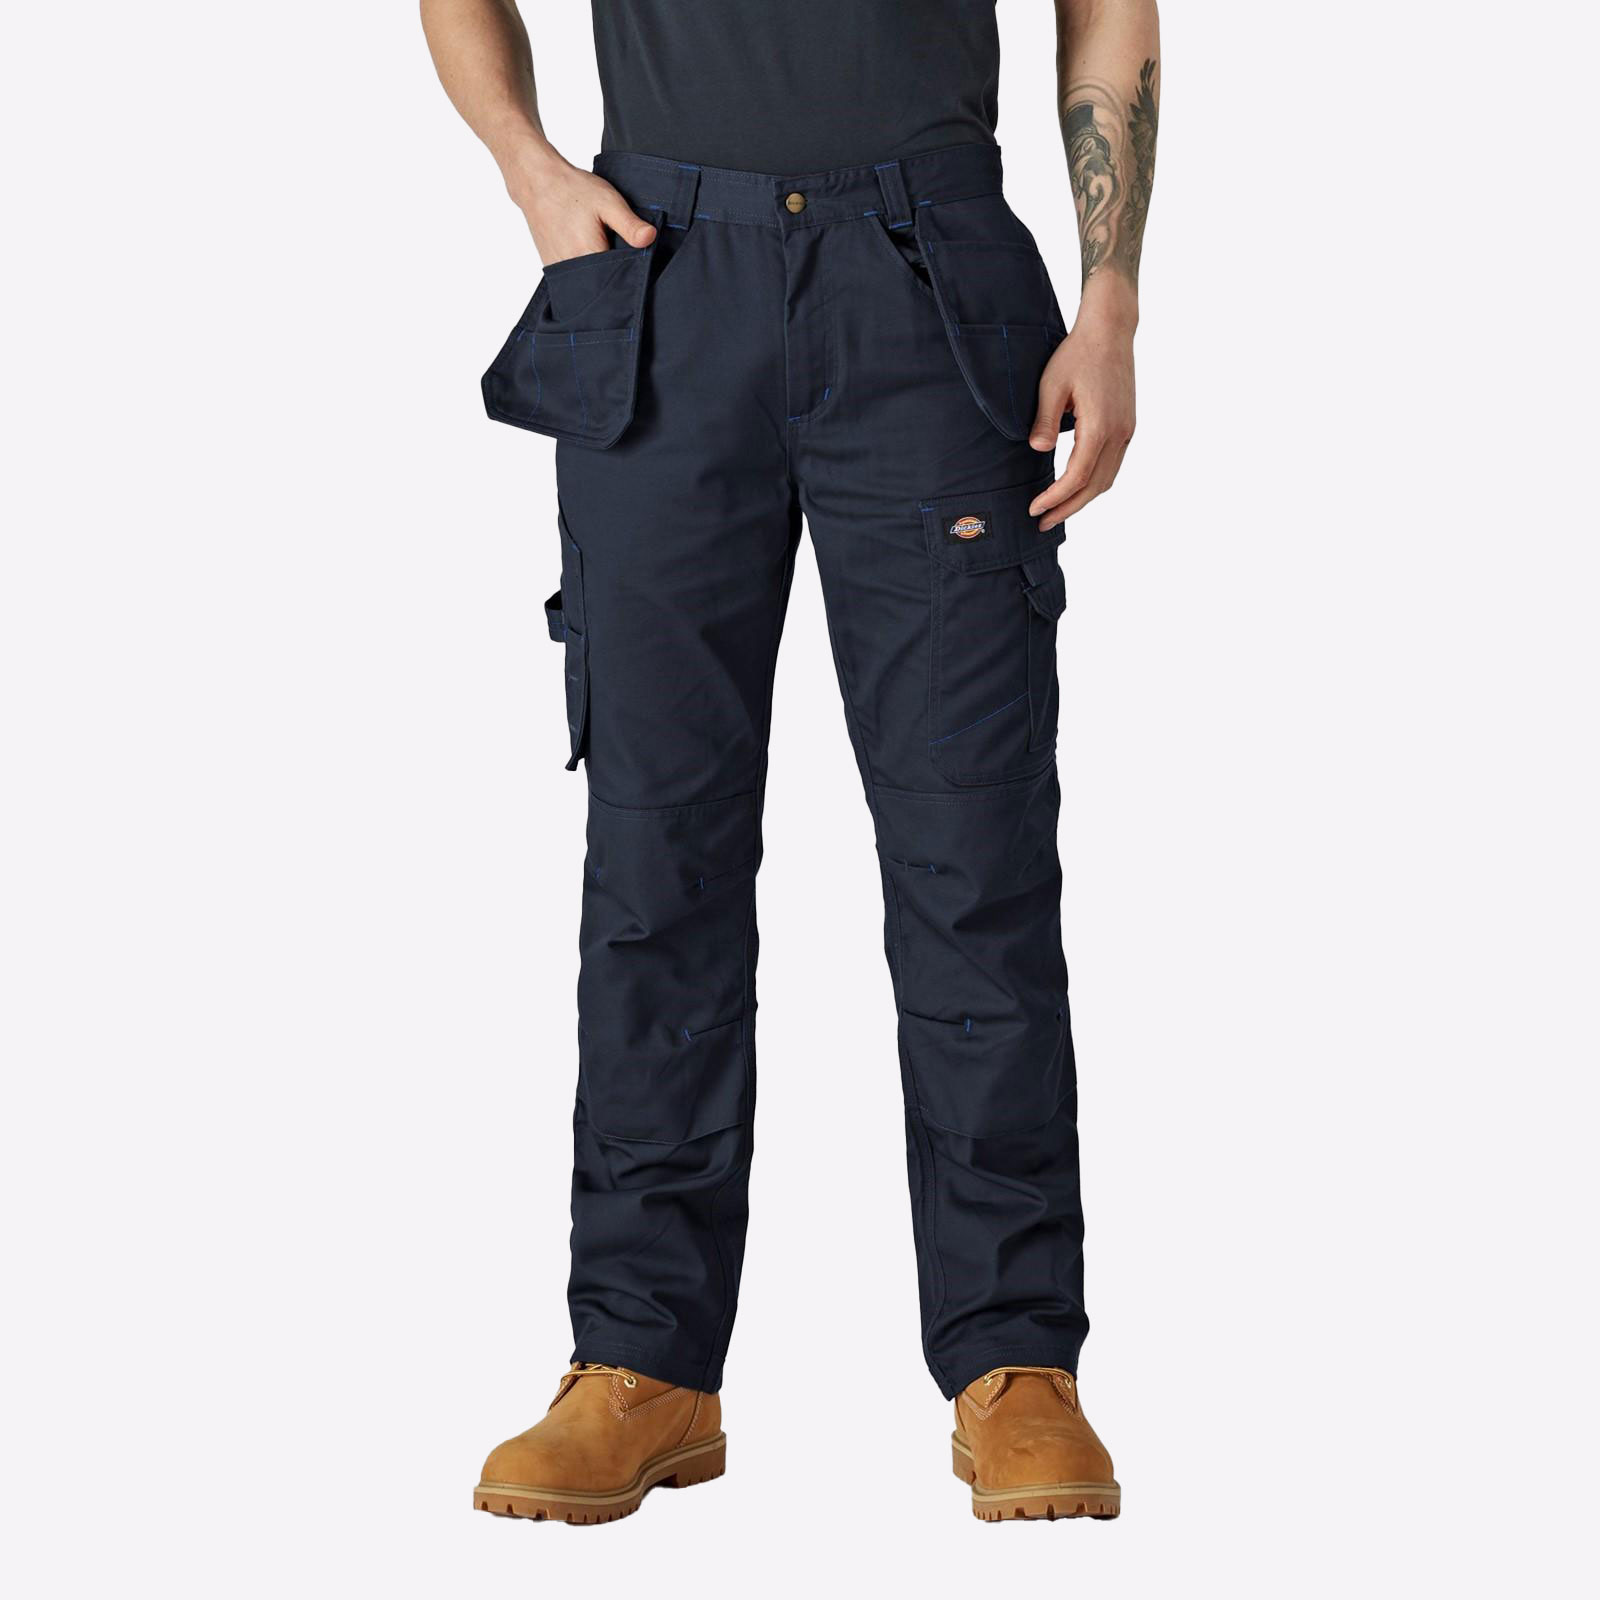 Dickies Redhawk Pro Trousers (Regular) Mens - GRD-36220-74522-08